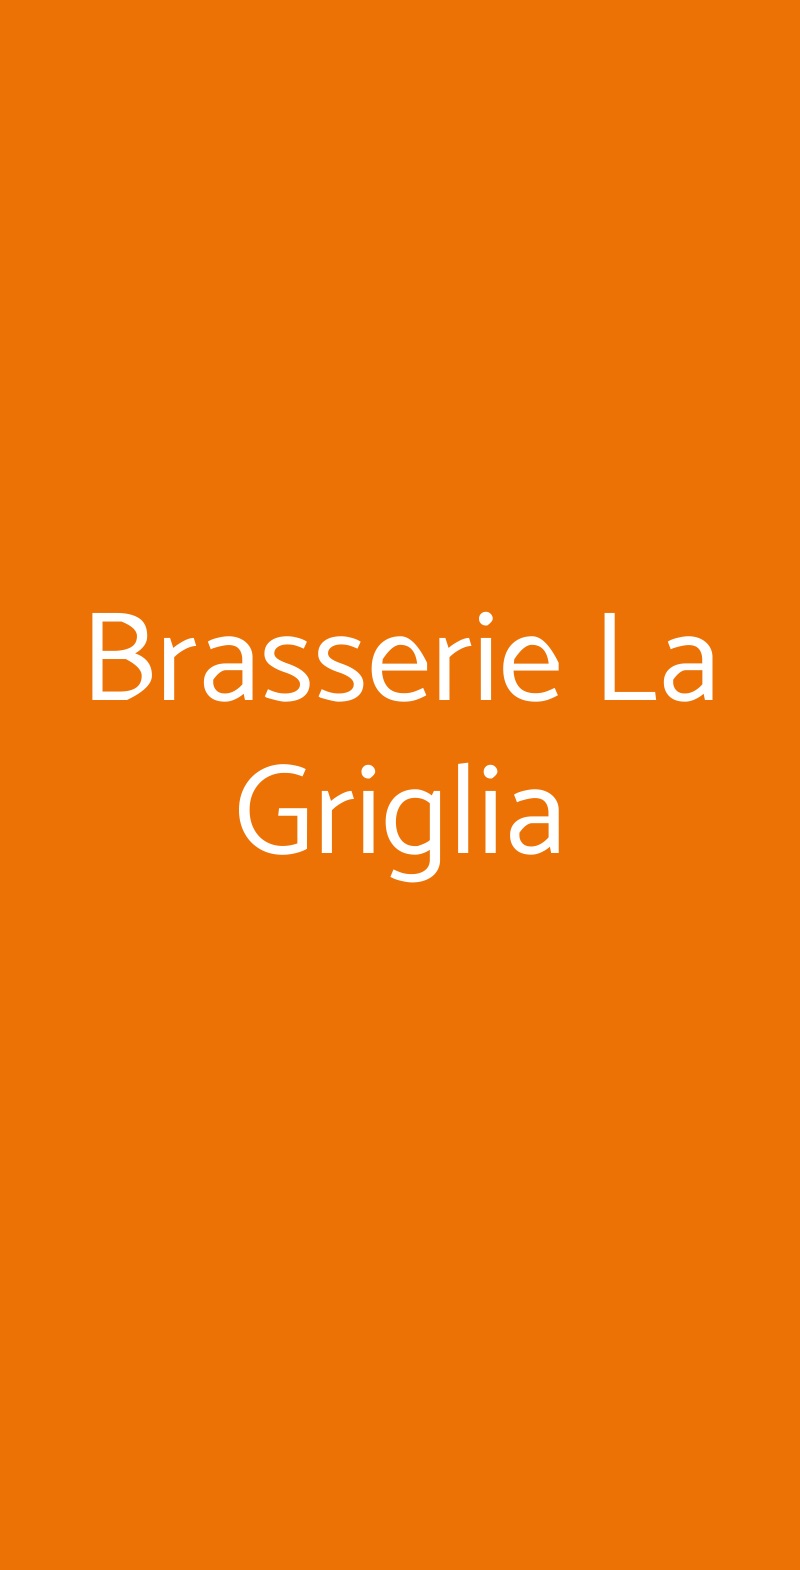 Brasserie La Griglia Nichelino menù 1 pagina